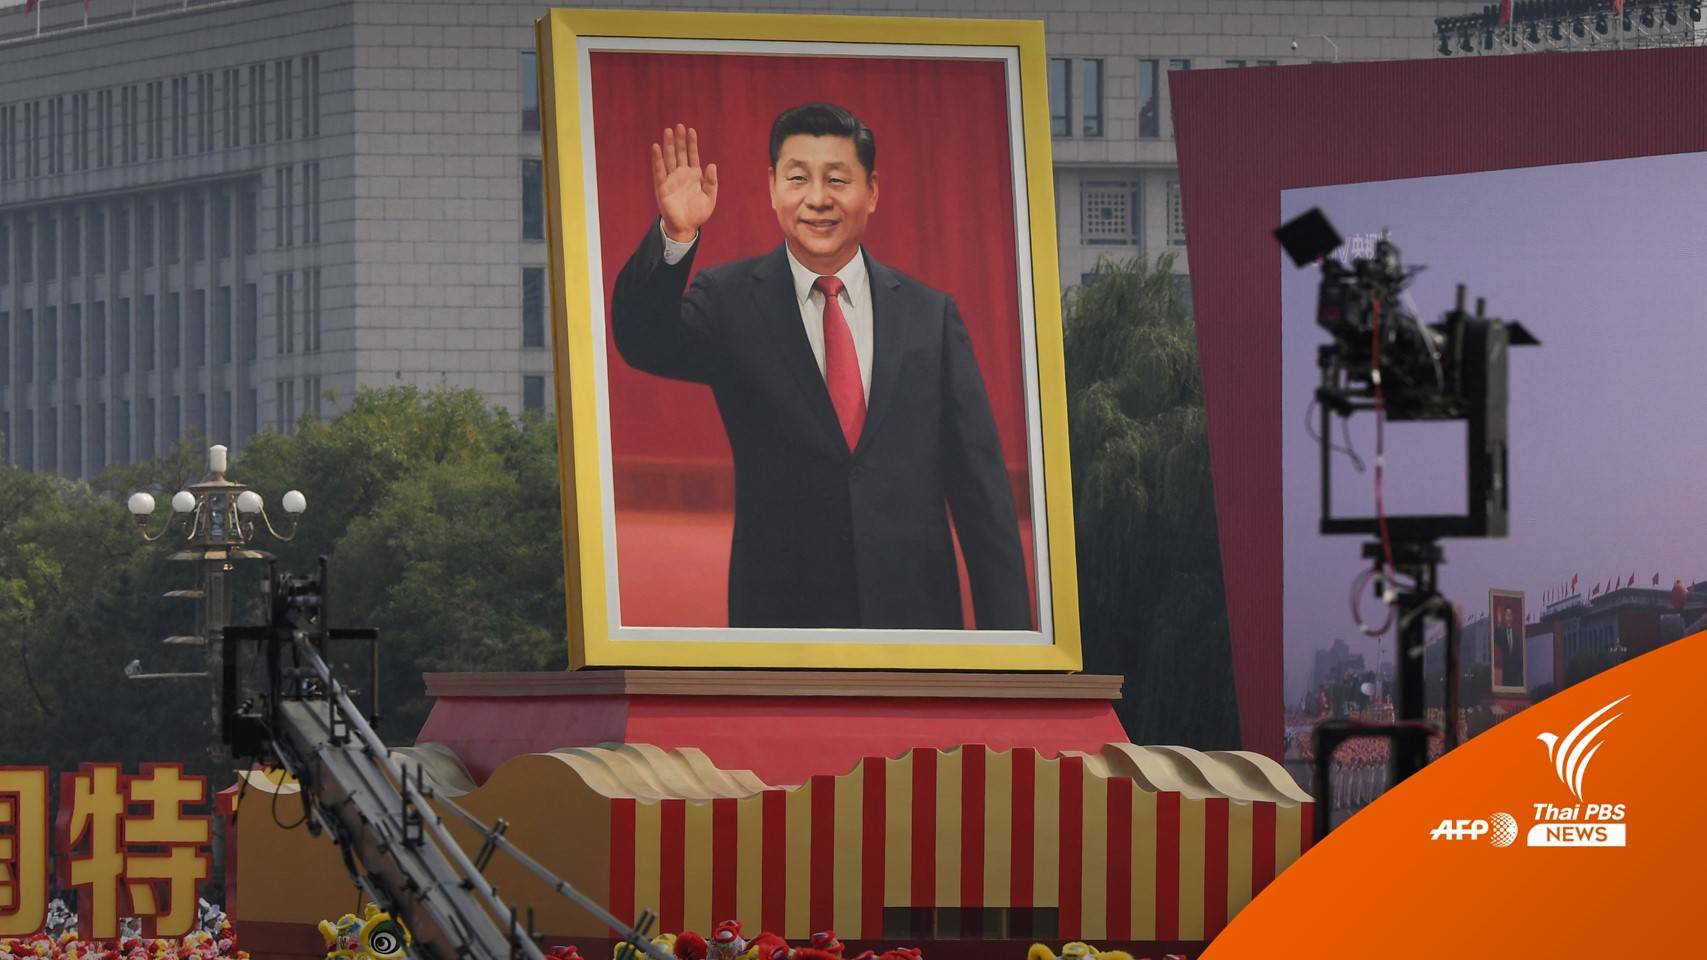 ประชุมสมัชชาฯ จีน เกาะติด "ทีมทายาทการเมือง" สี จิ้นผิง 